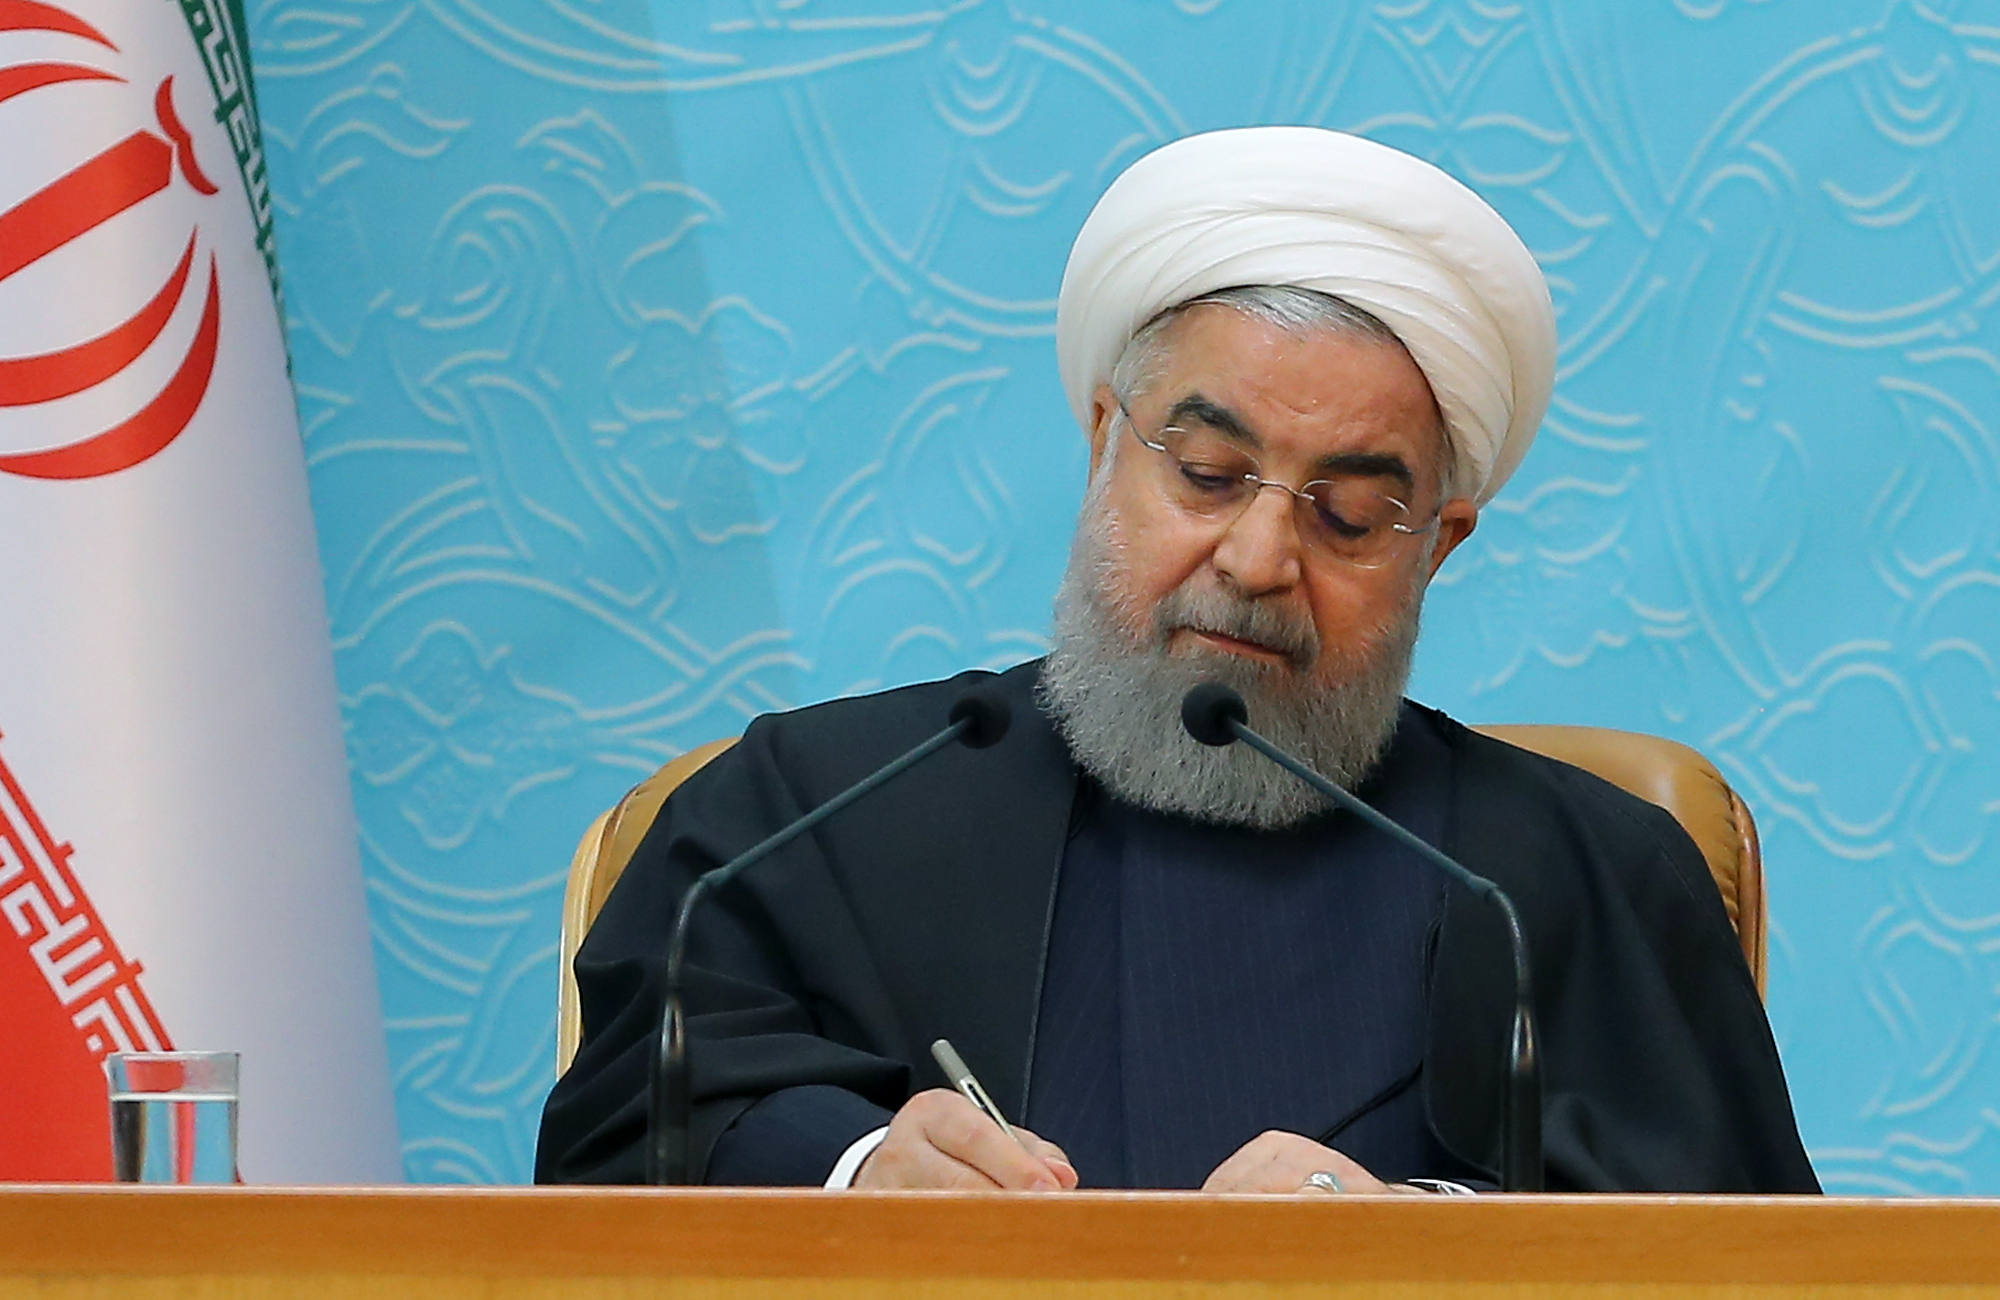 روحانی در پیامی درگذشت سیامند رحمان را تسلیت گفت